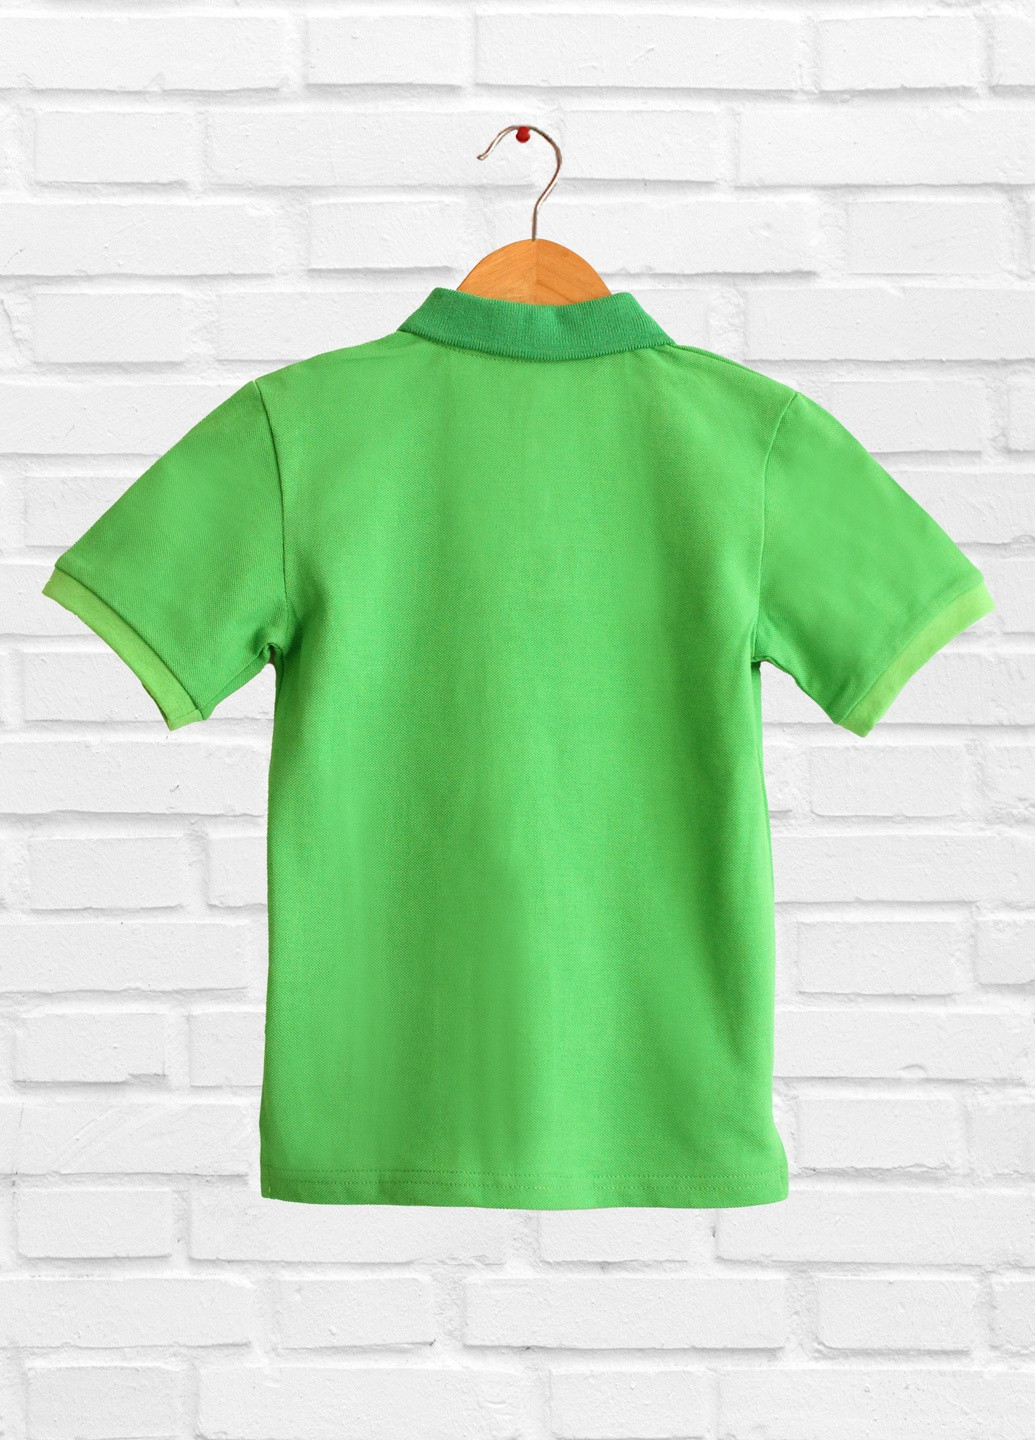 Зеленая летняя футболка для детей, зелёная, хлопковая дм471/1-43 зелений . Malta